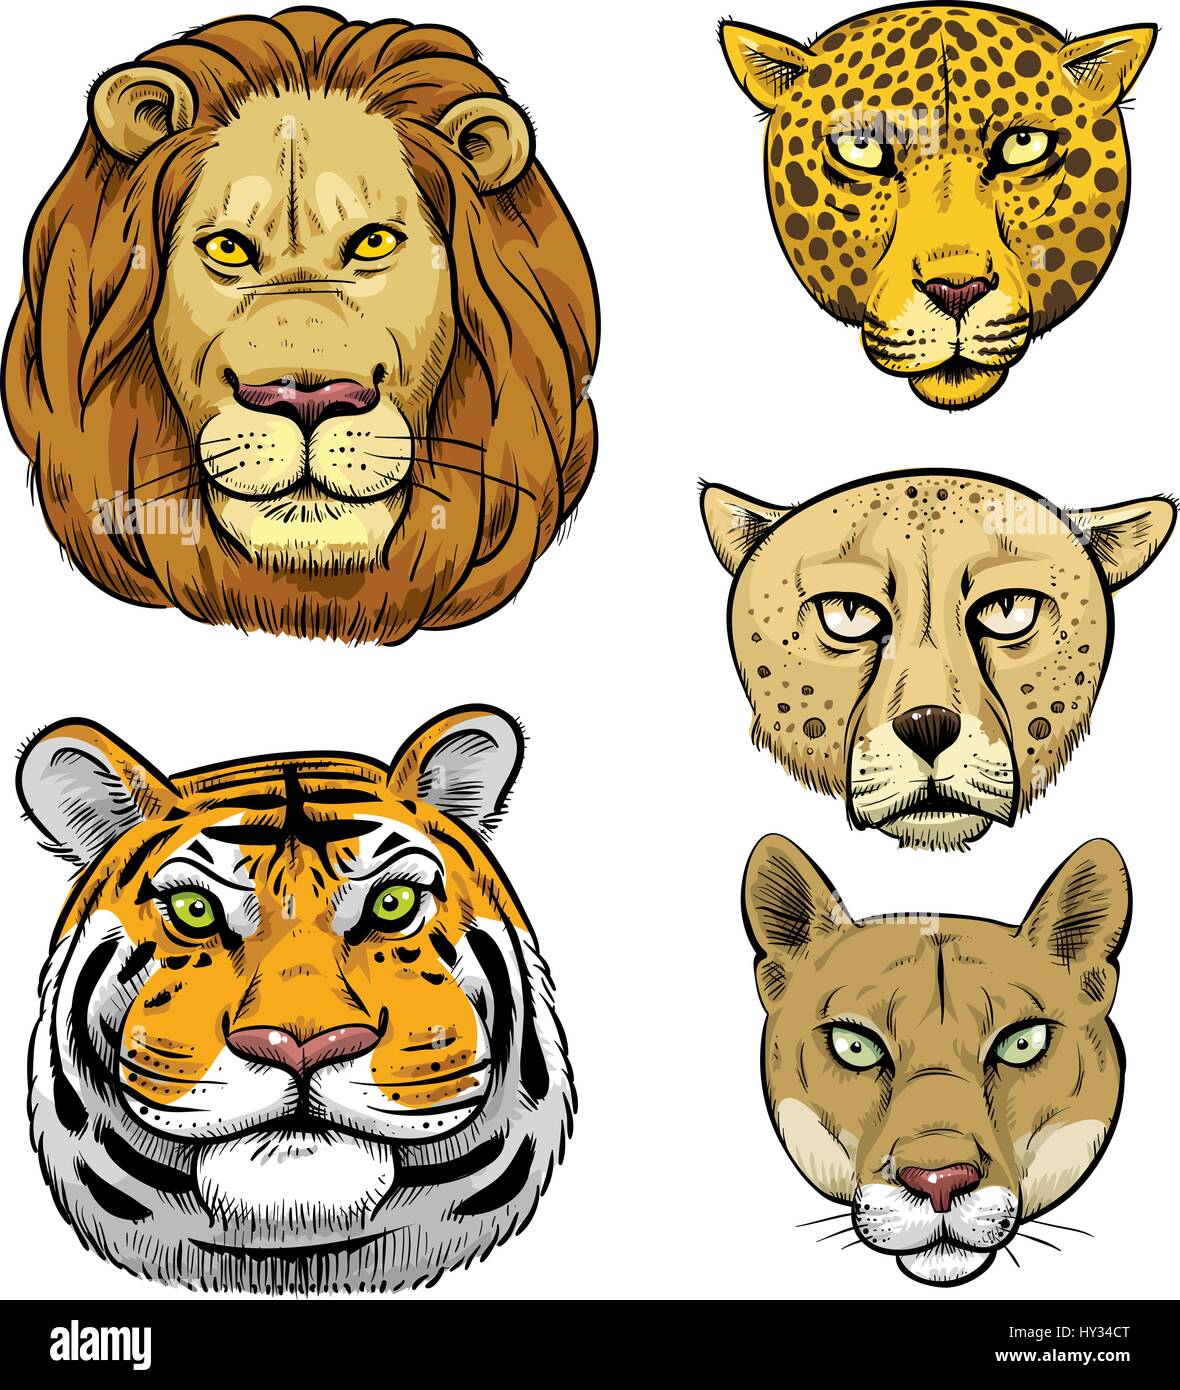 Cartoon Gesichter einiger der größten Raubkatzen: Löwe, Tiger, Gepard, Leopard, Puma. Stock Vektor